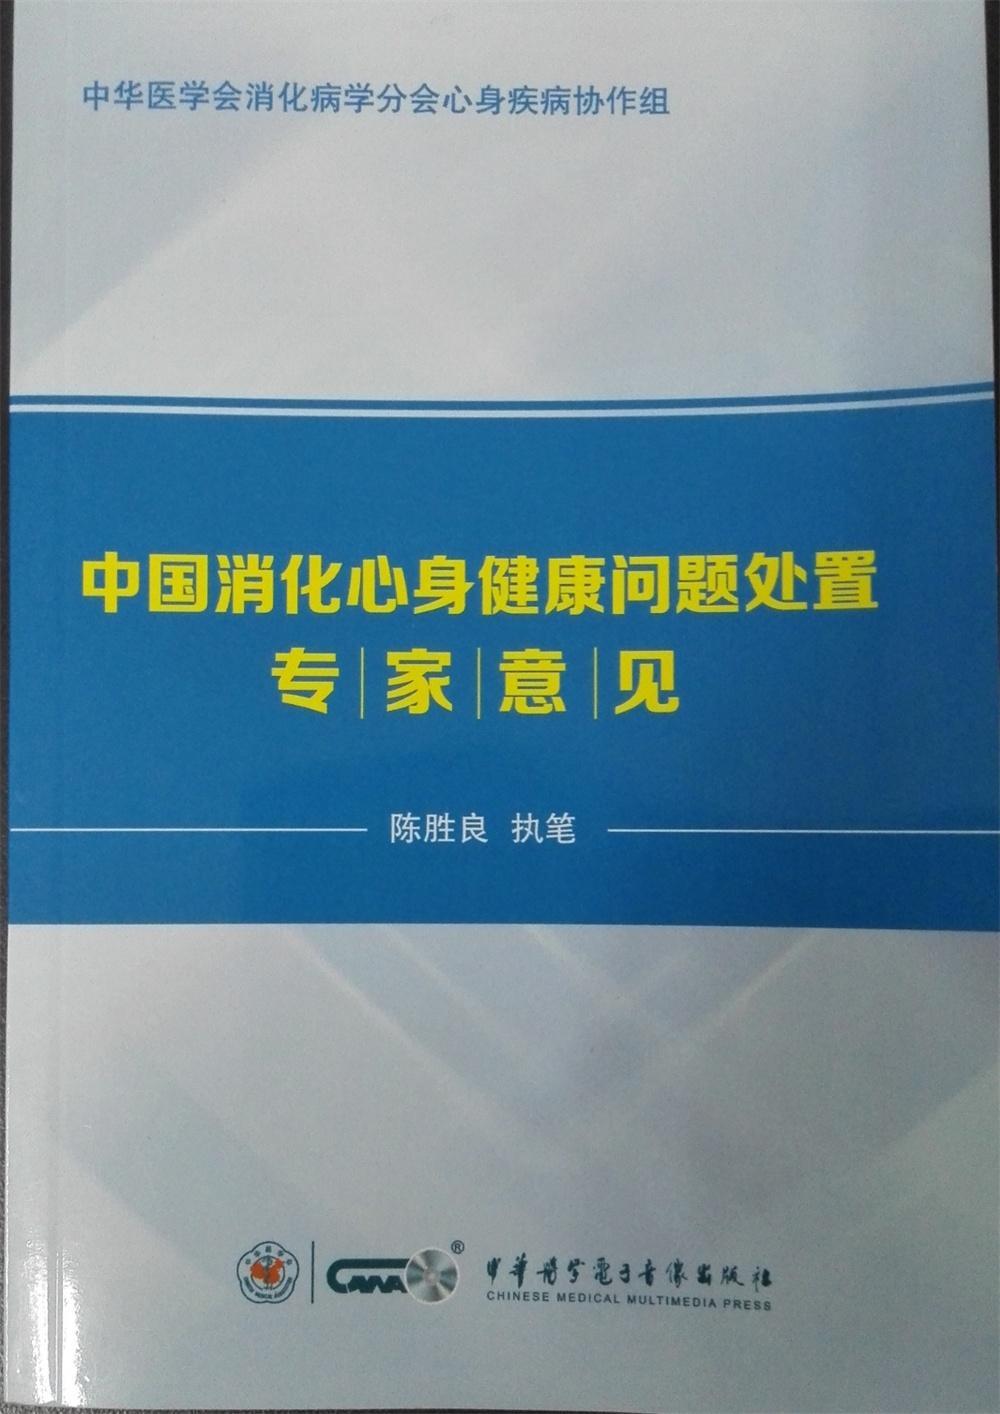 中国消化心身健康问题处置专家意见陈胜良  医药卫生书籍